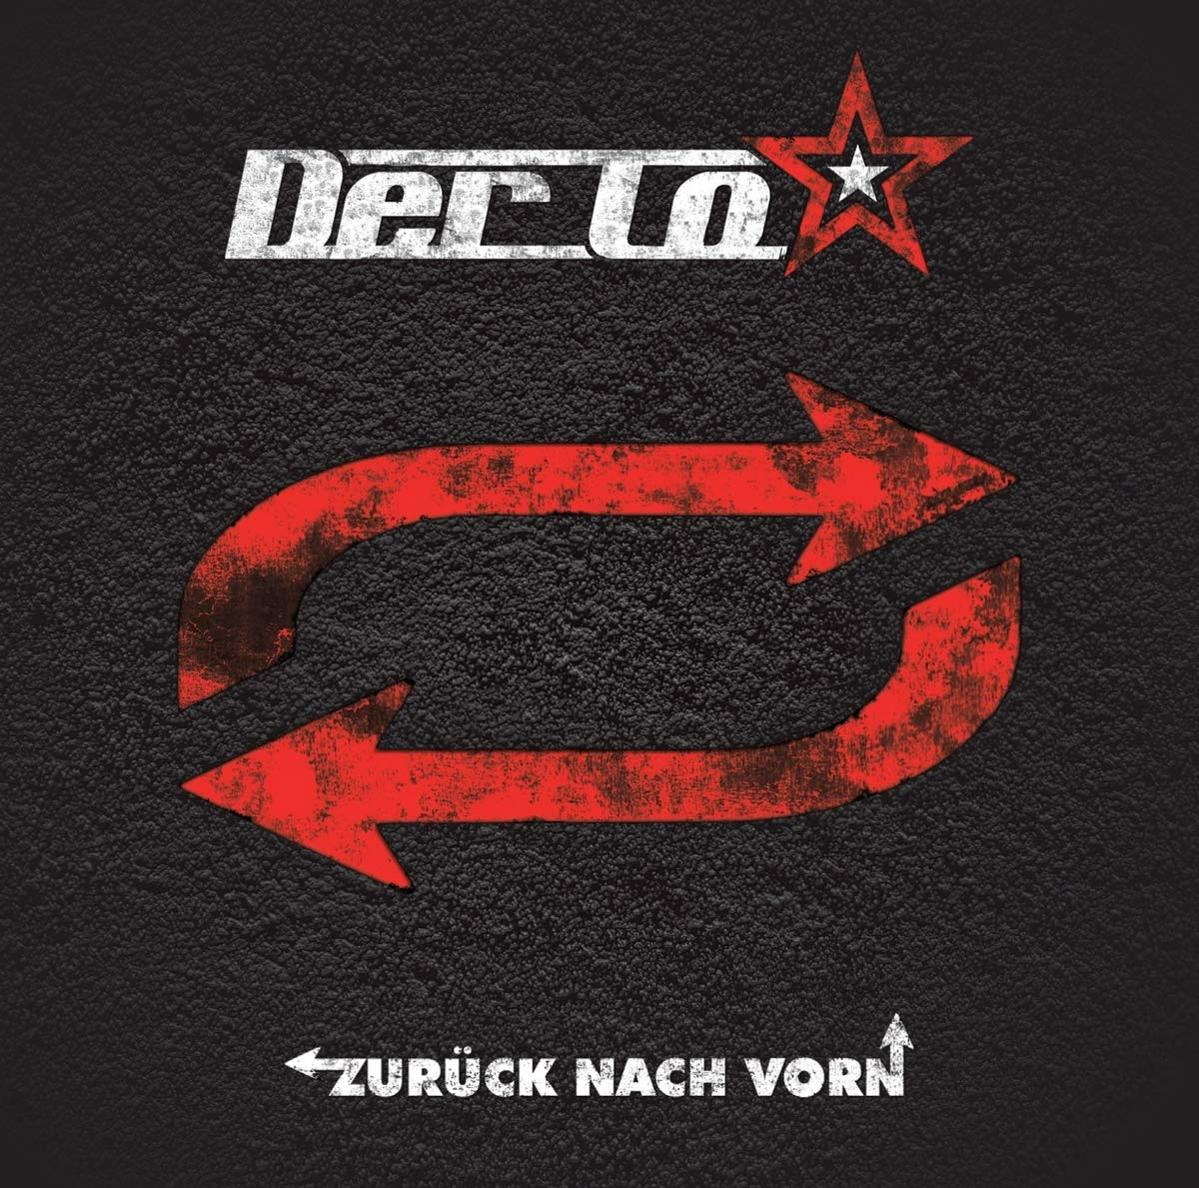 Der To - Zurück Vorn Nach - (CD)